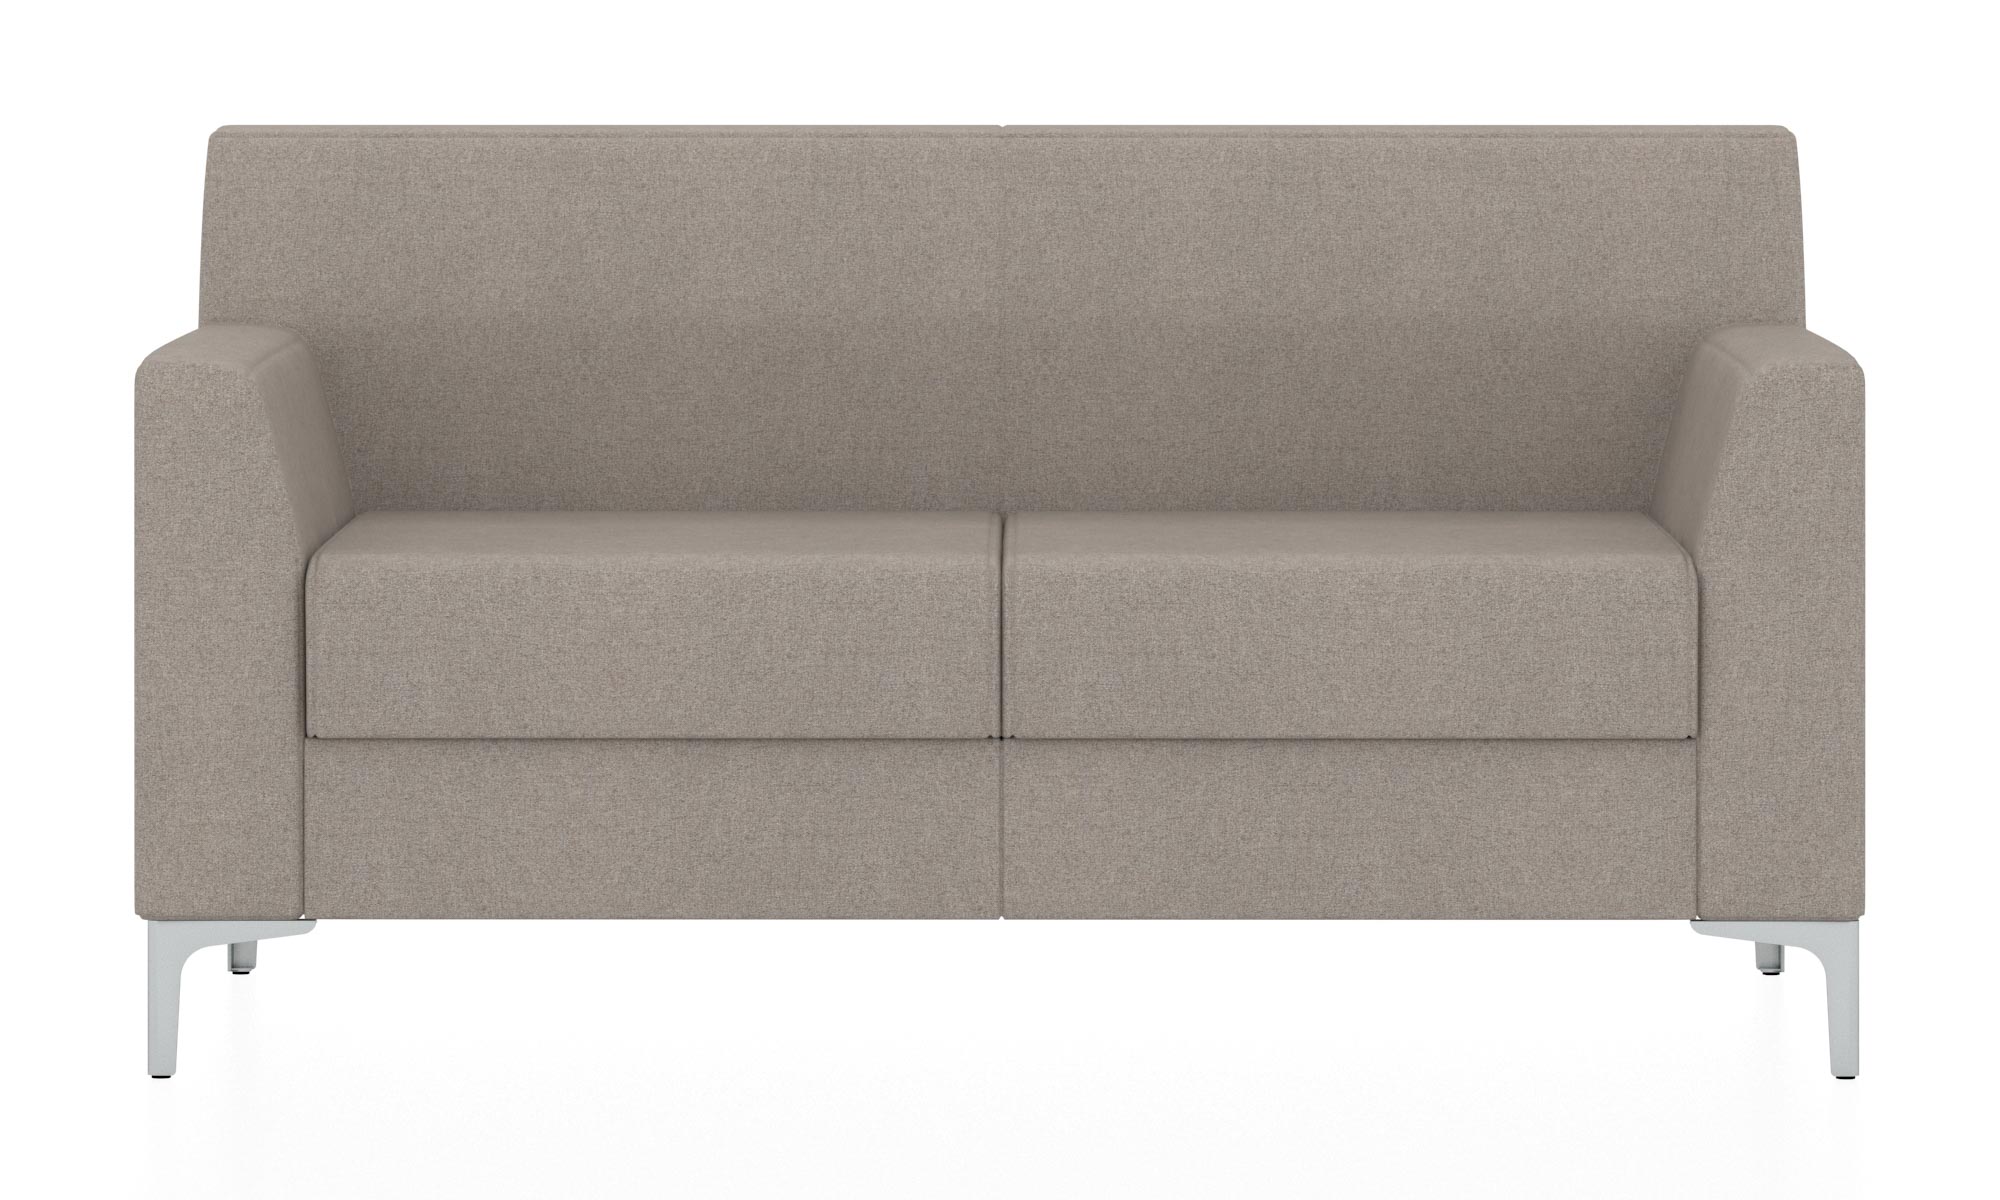 Классический двухместный диван. Обивка из ткани серого цвета (Кардиф 11)